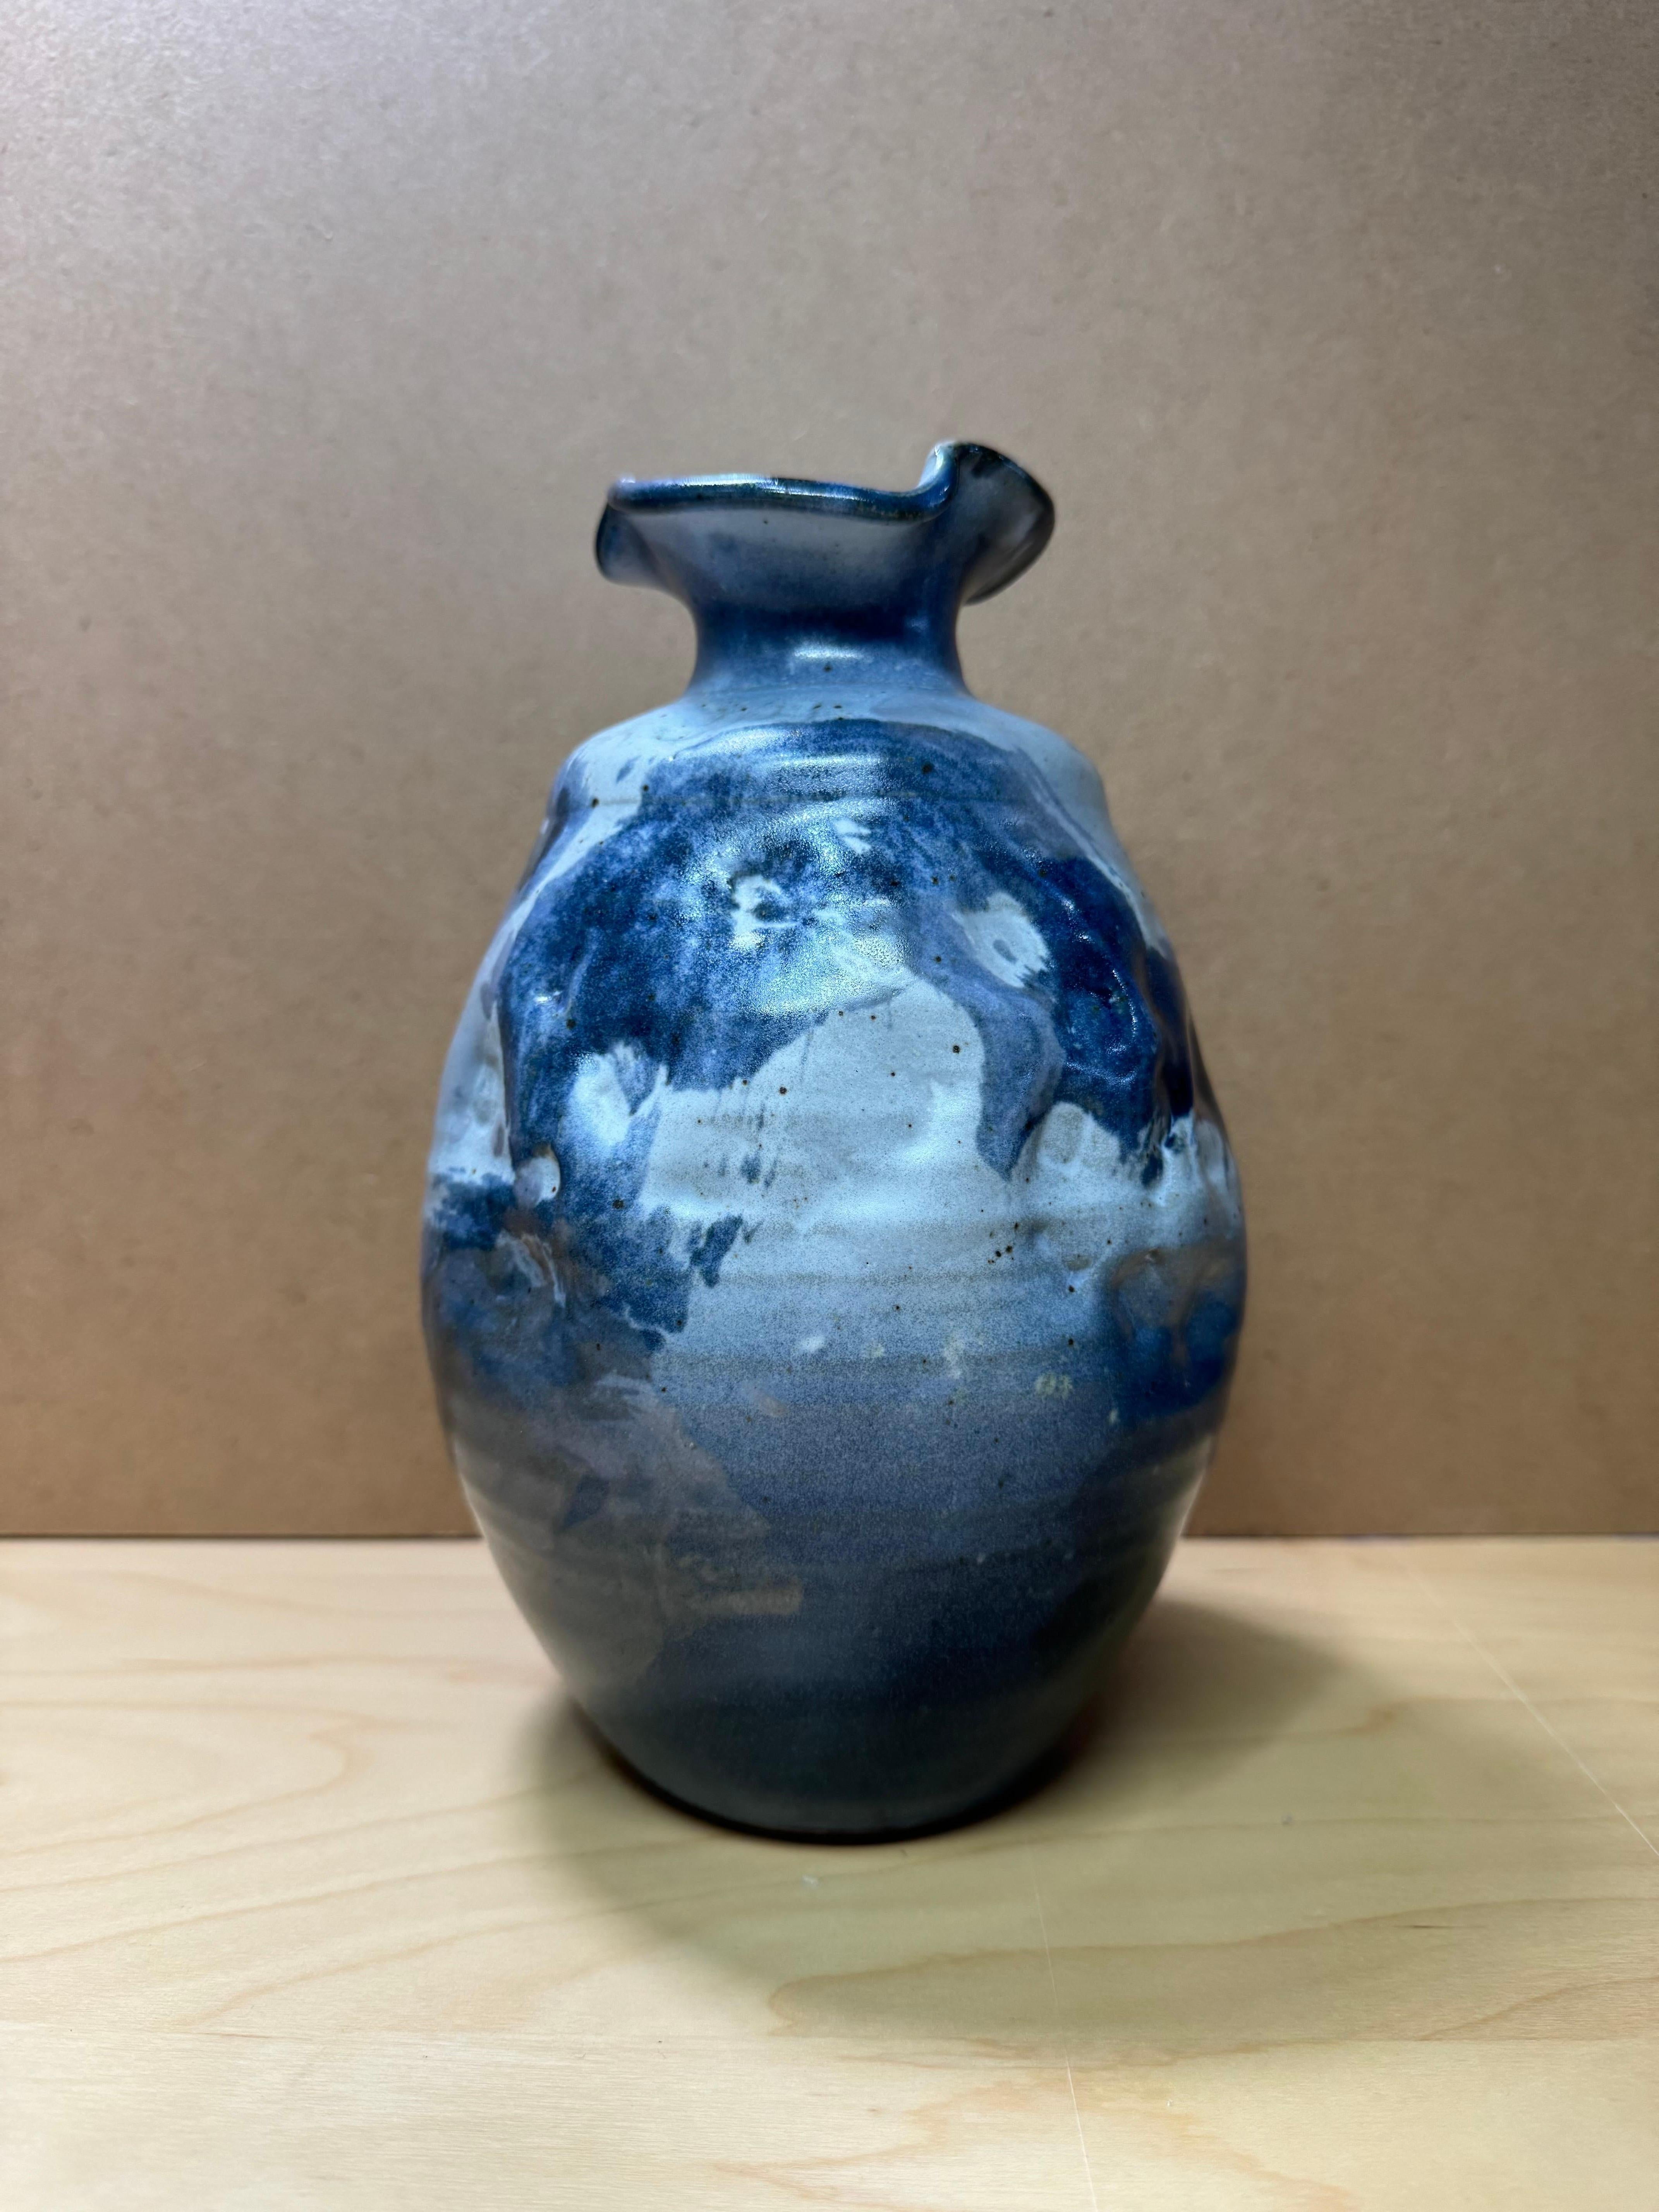 Schöne handgedrehte Keramikvase mit geriffeltem und gekräuseltem Rand und unebenem Körper. Die in verschiedenen Blautönen gehaltene Vase ist ein echter Hingucker, der überall die Blicke auf sich zieht.
Diese Vase ist mit 